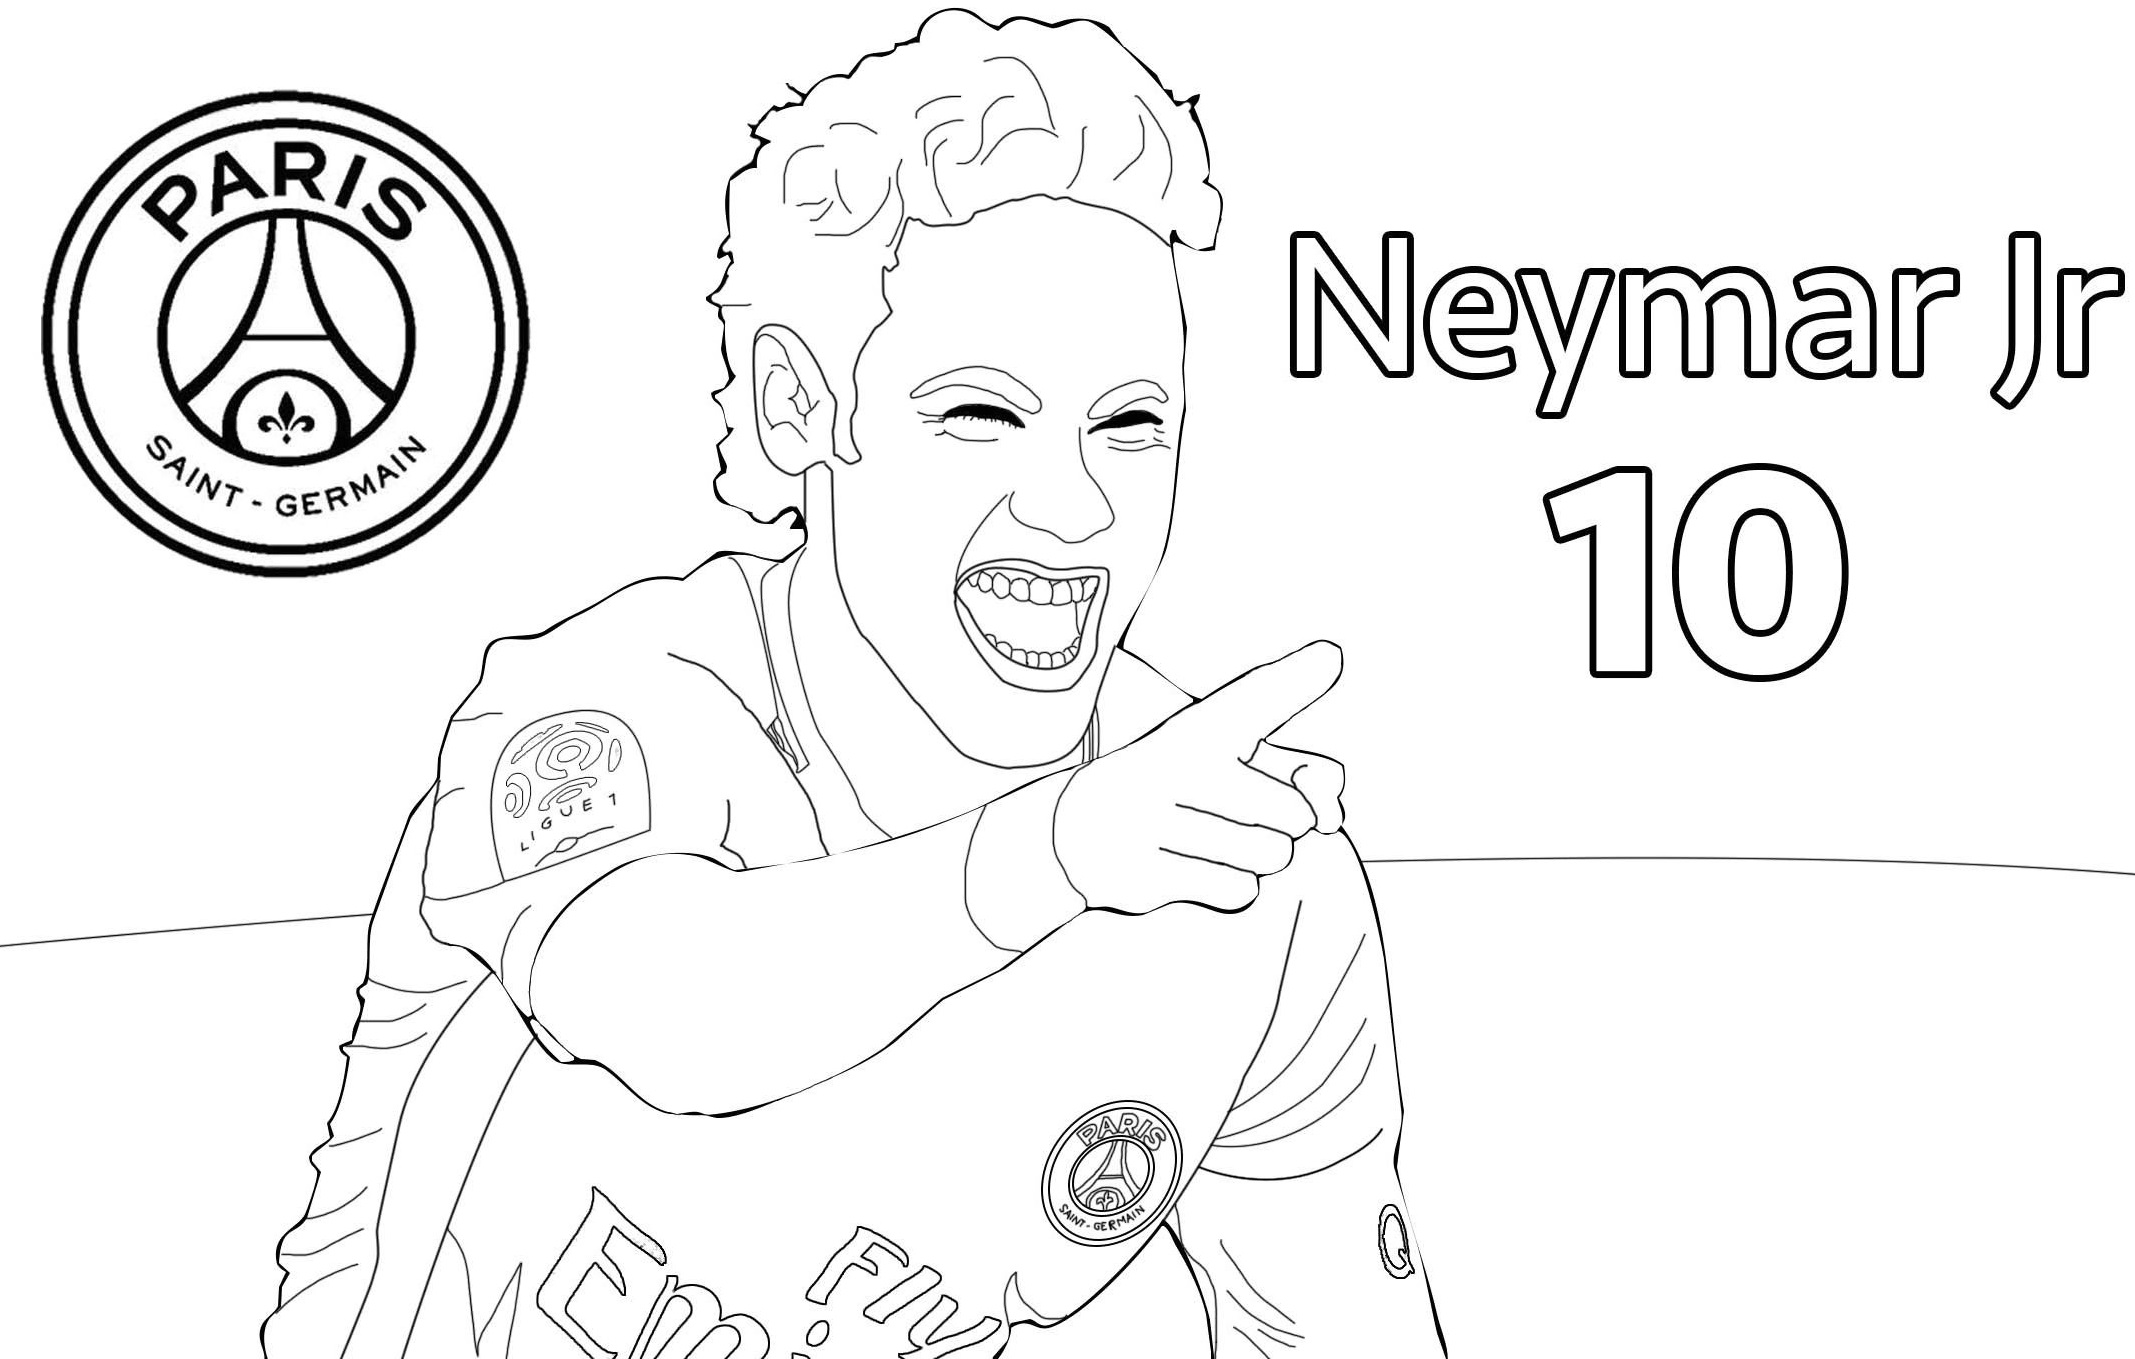 psg neymar jr 10